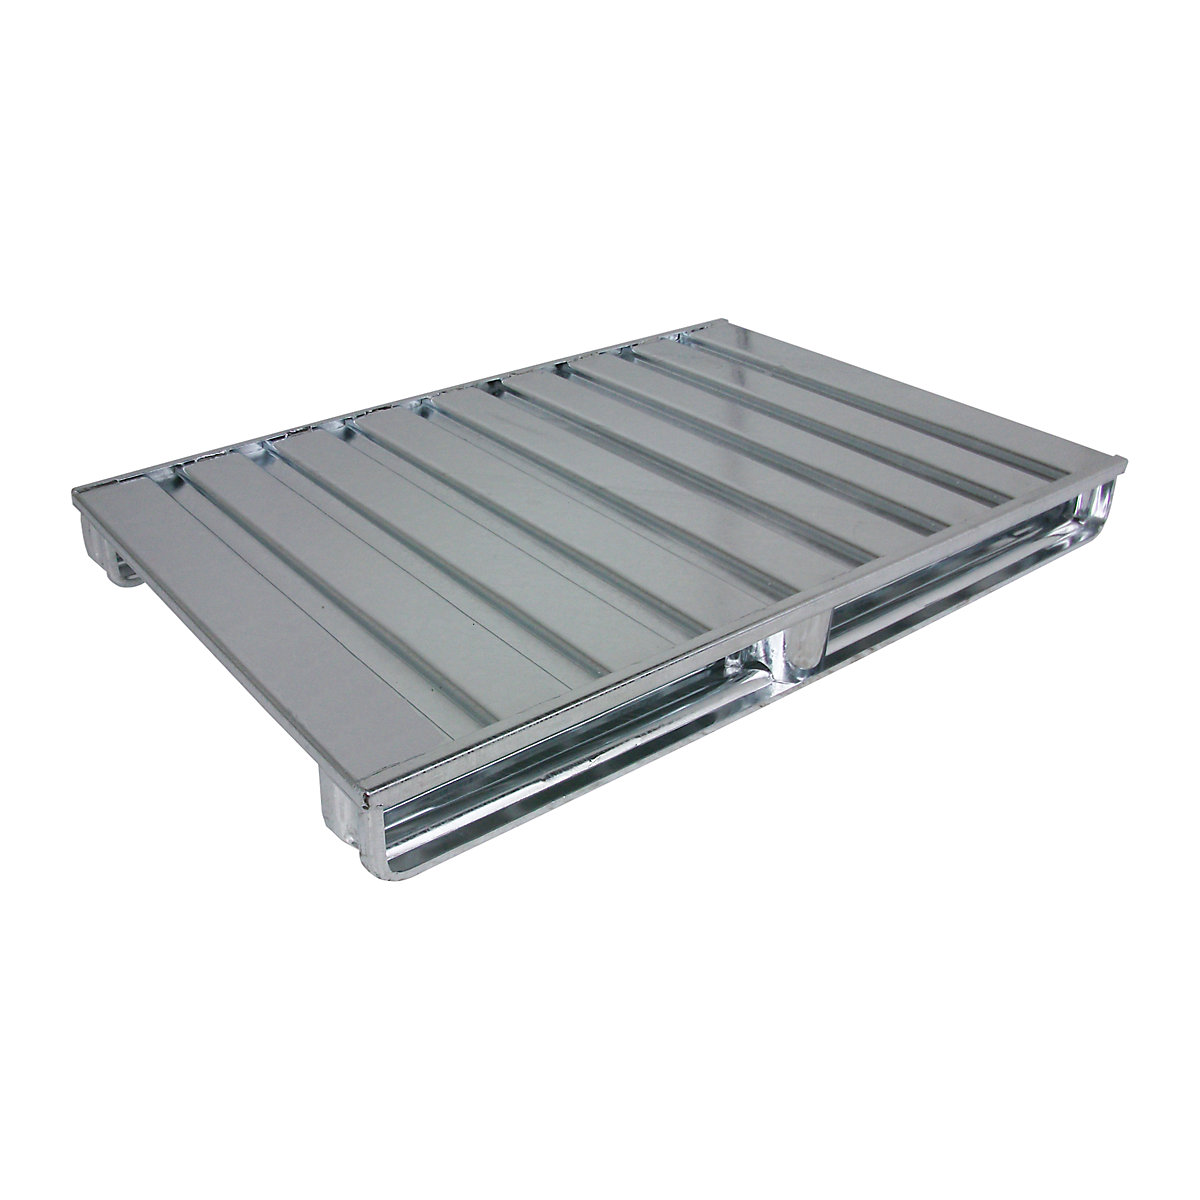 Palete plana de aço – Heson, CxL 1200 x 1000 mm, capacidade de carga 1500 kg, galvanizado-1